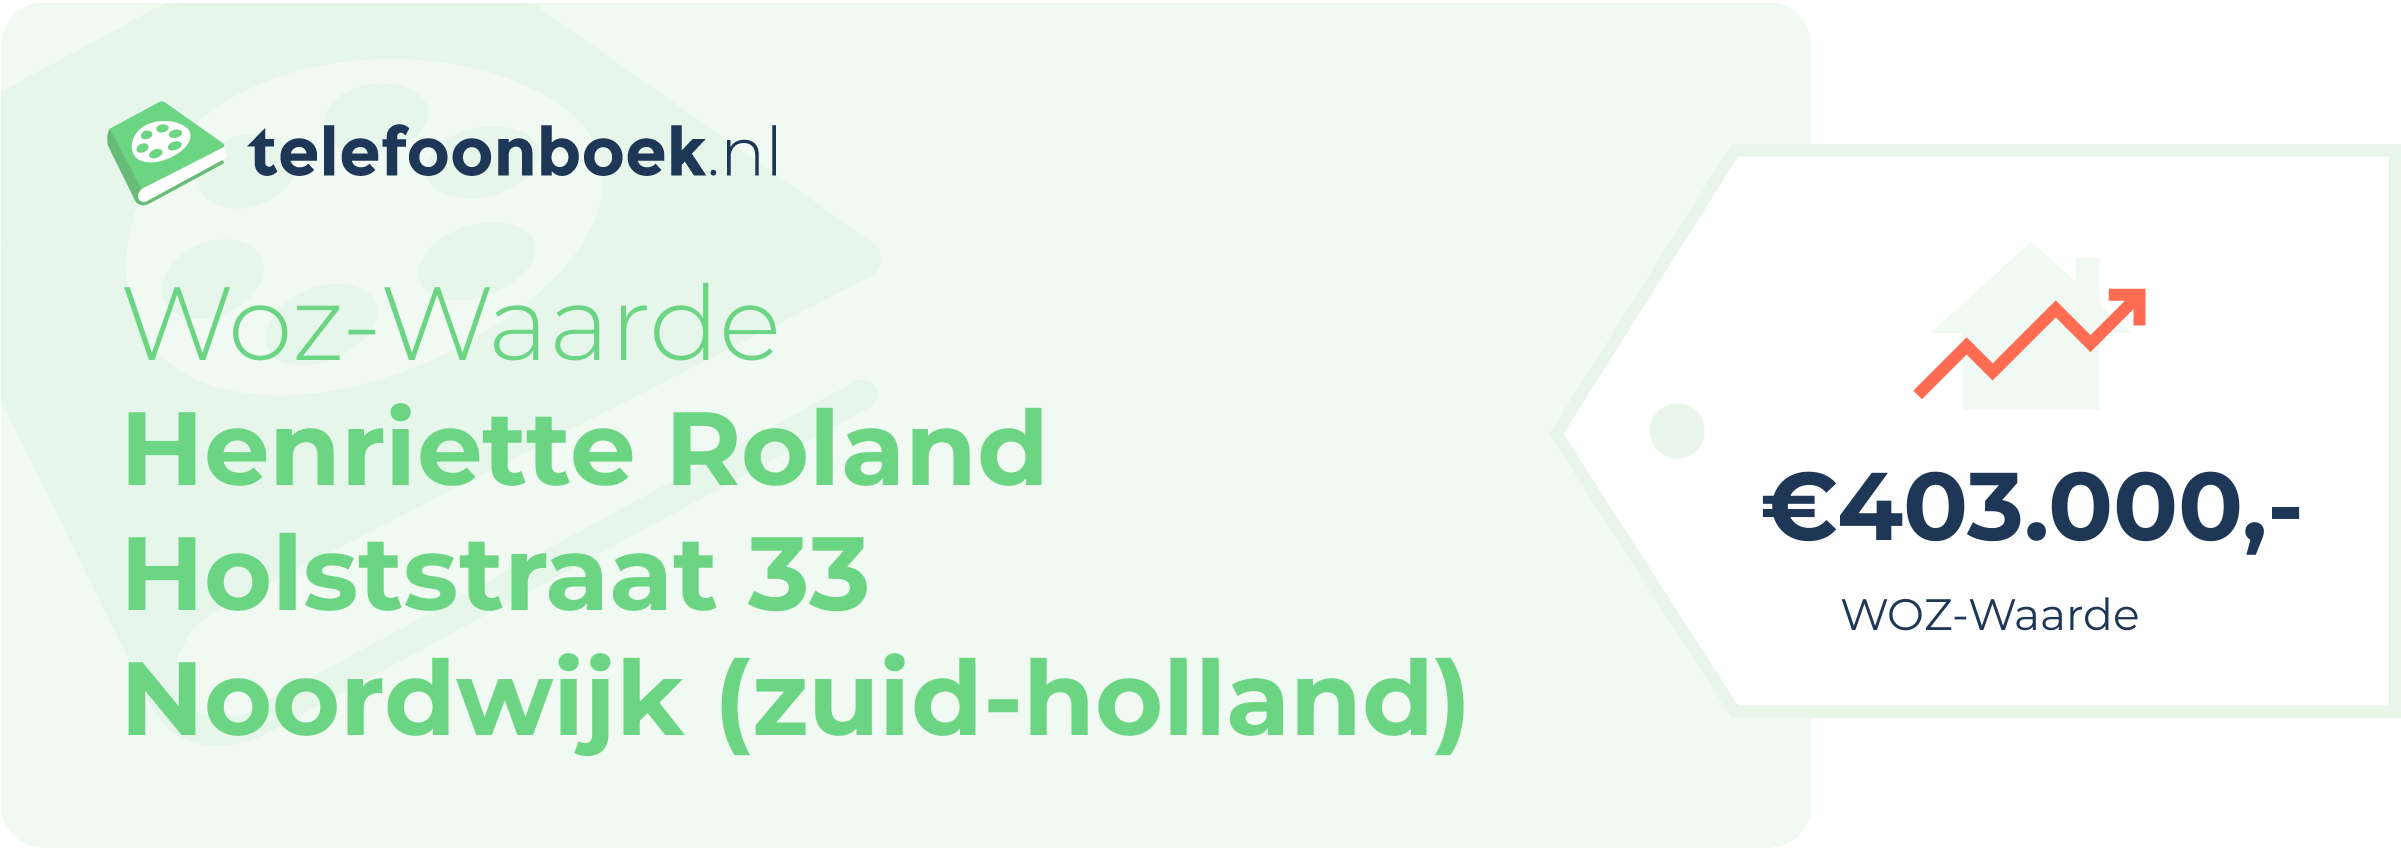 WOZ-waarde Henriette Roland Holststraat 33 Noordwijk (Zuid-Holland)